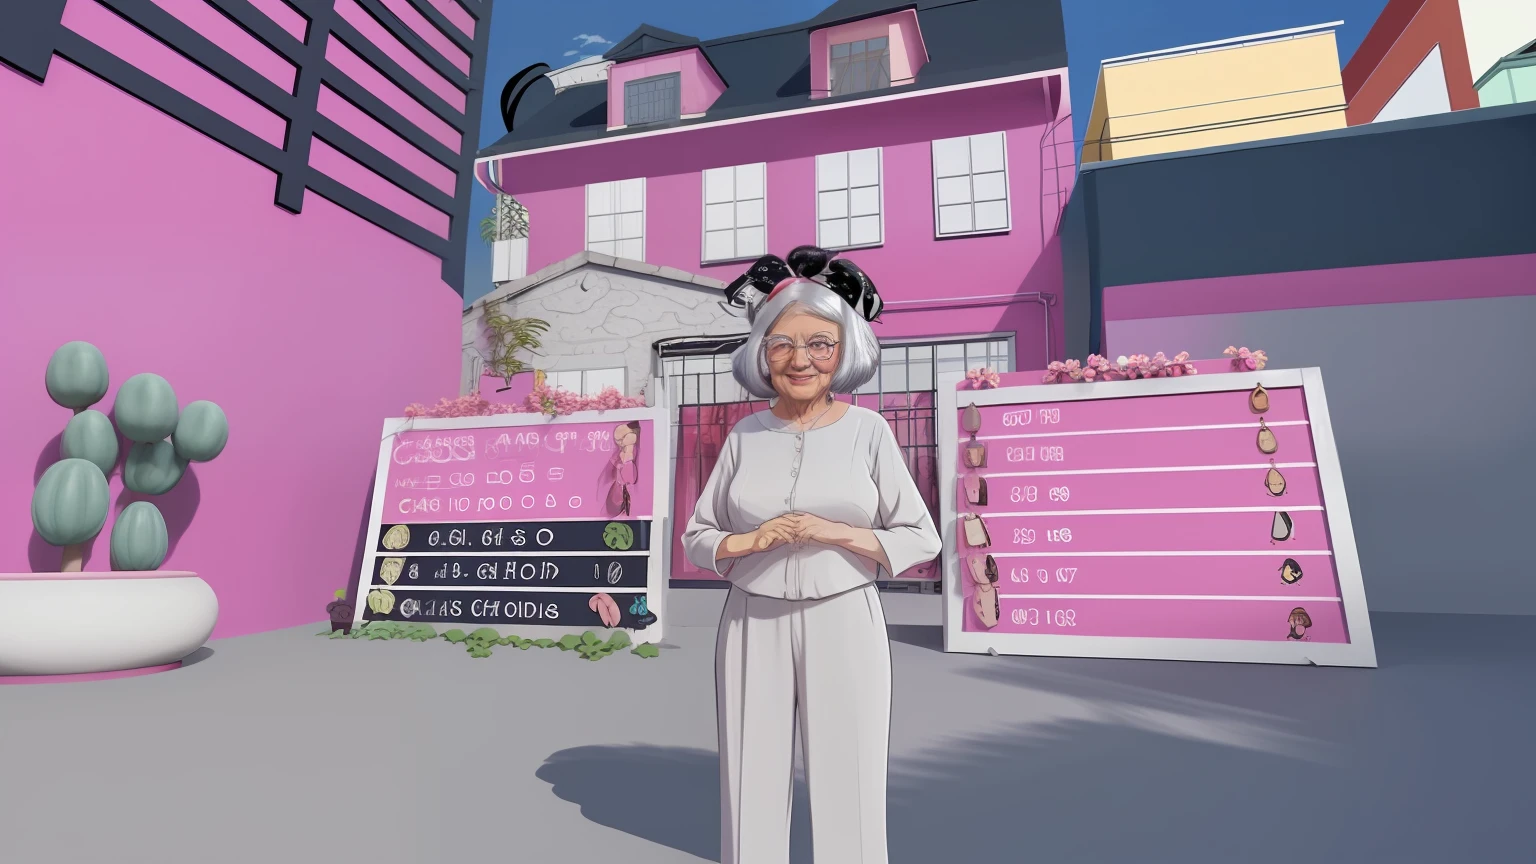 奶奶的頭髮上有鮑伯, 背景是粉紅色的房子, 卡通風格, 動漫風格